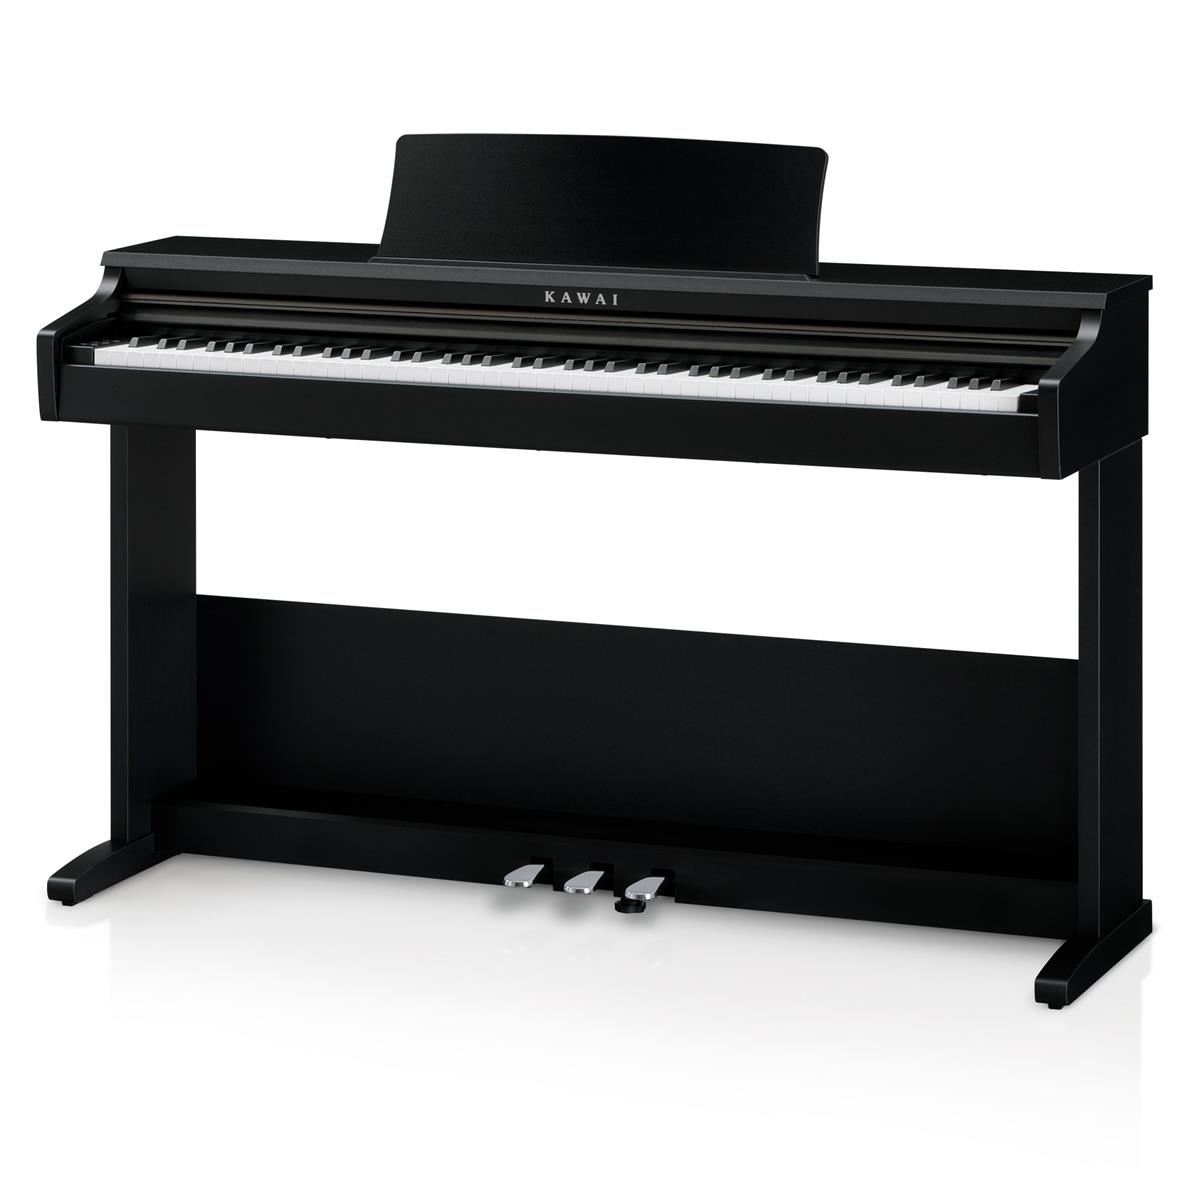 Kawai KDP75 88-Key Digital Piano with Bench $699 + free s/h at Adorama